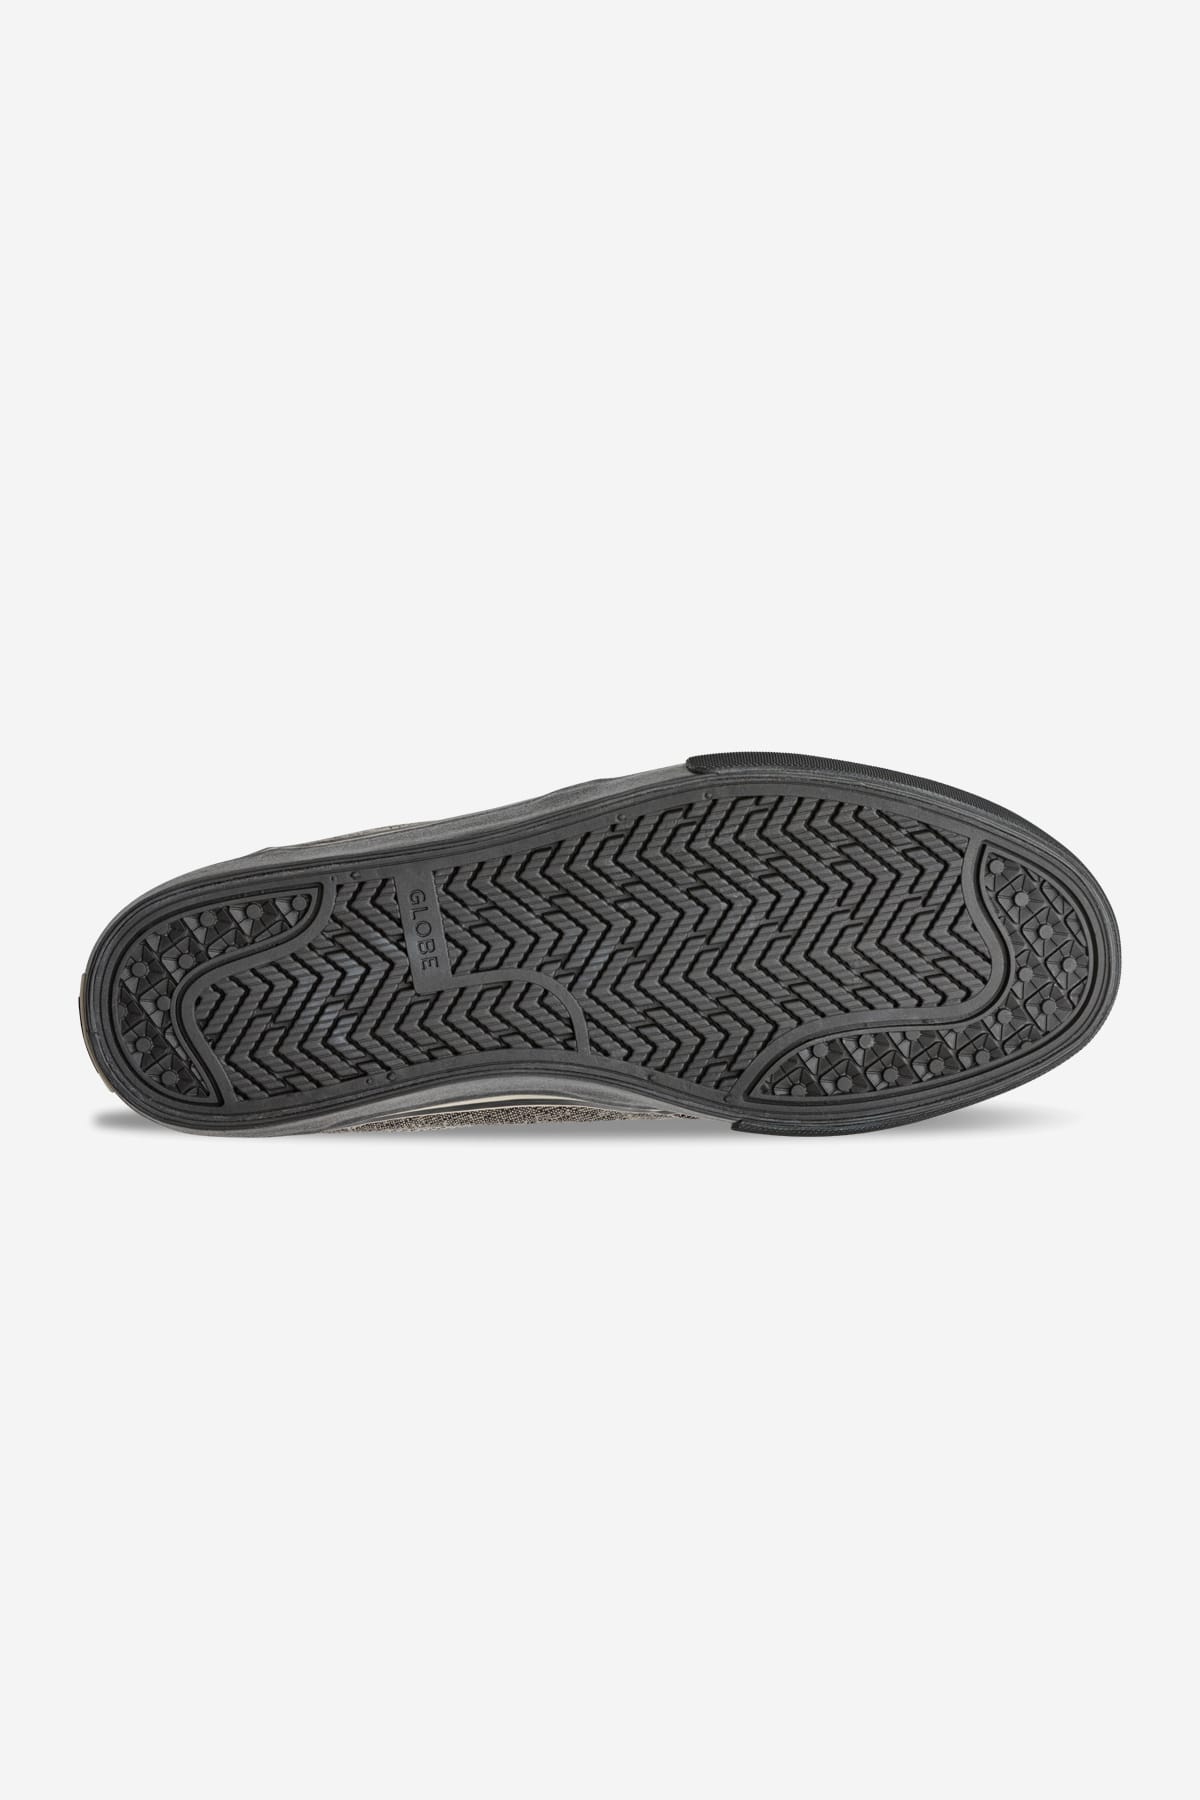 mahalo hemp black skate shoes